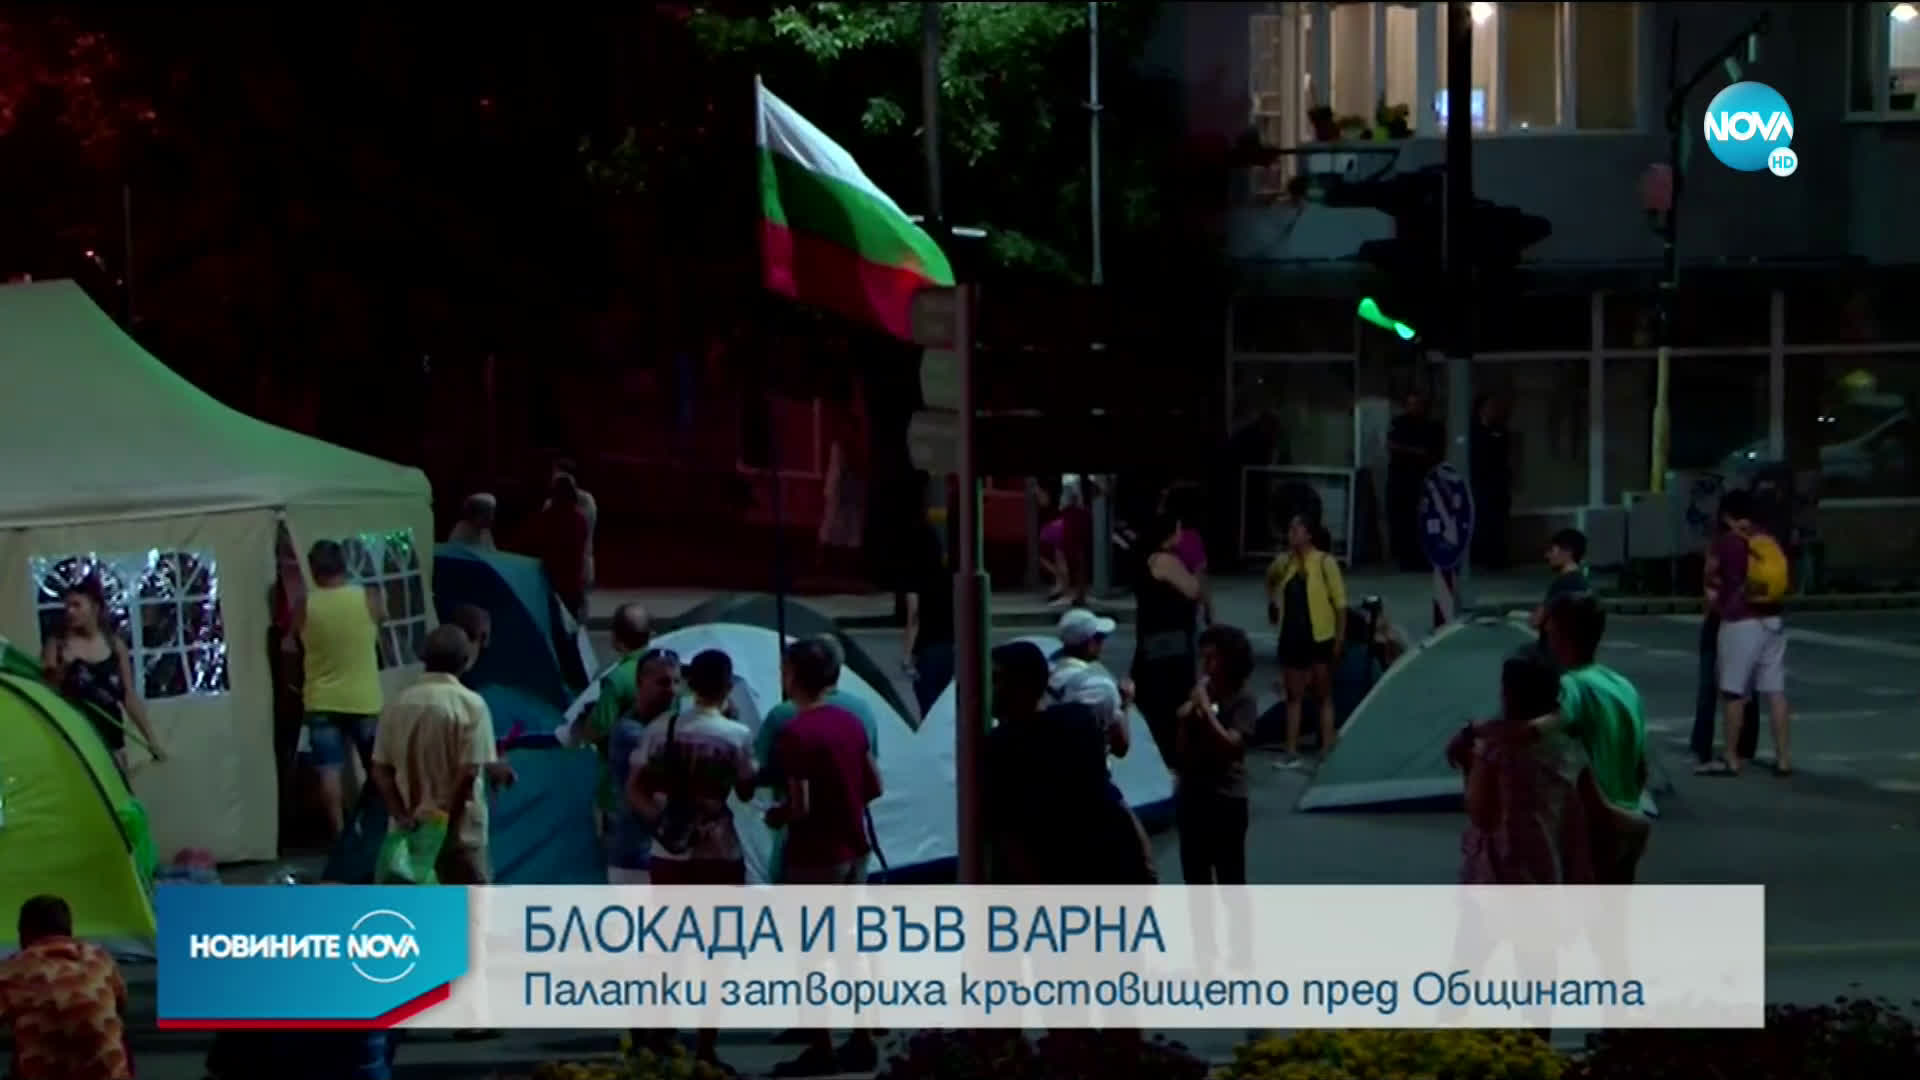 Палатки затвориха кръстовището пред общината във Варна